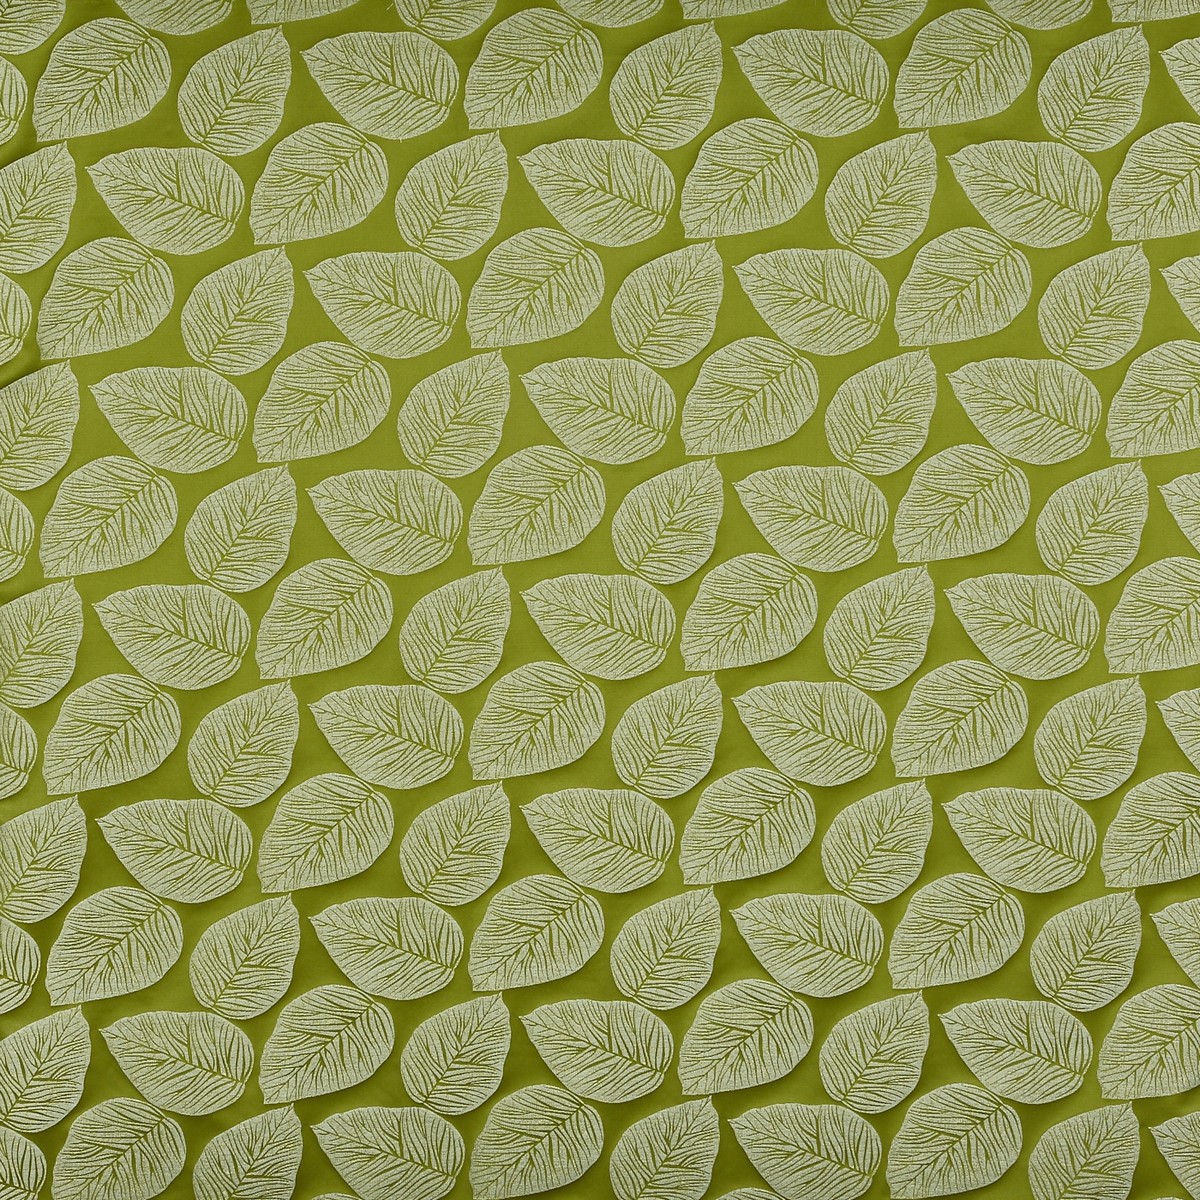 Hanna Eucalyptus Fabric by Prestigious Textiles